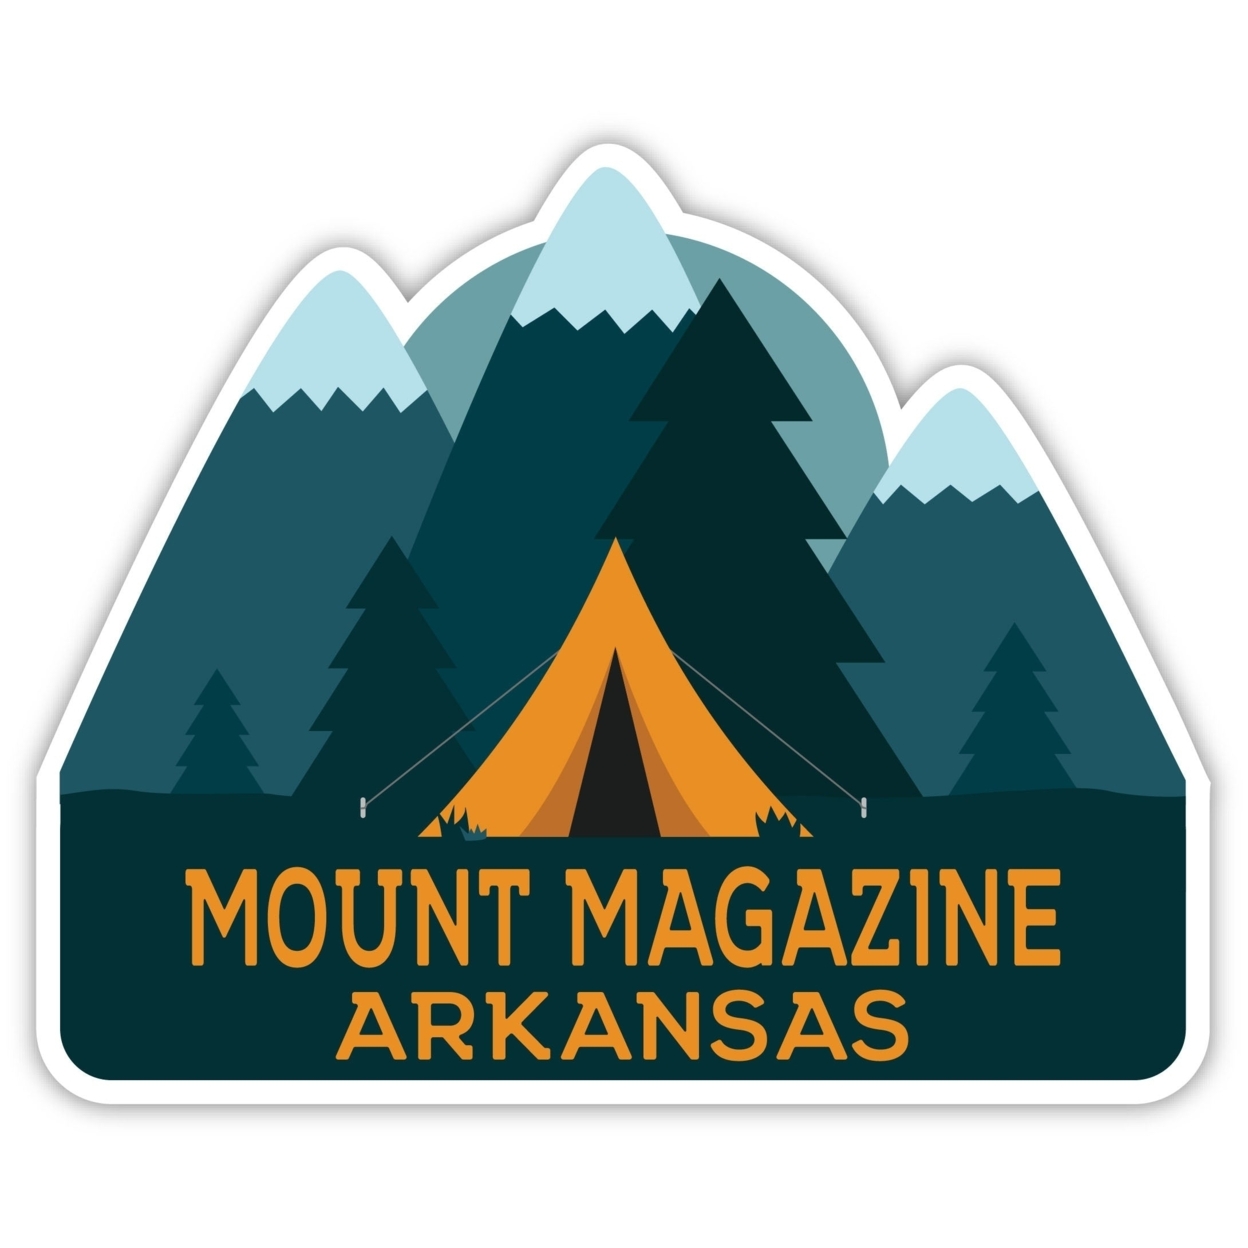 Mount Magazine Arkansas Souvenir Decorative Stickers (Choose Theme And Size) - Single Unit, 2-Inch, Tent